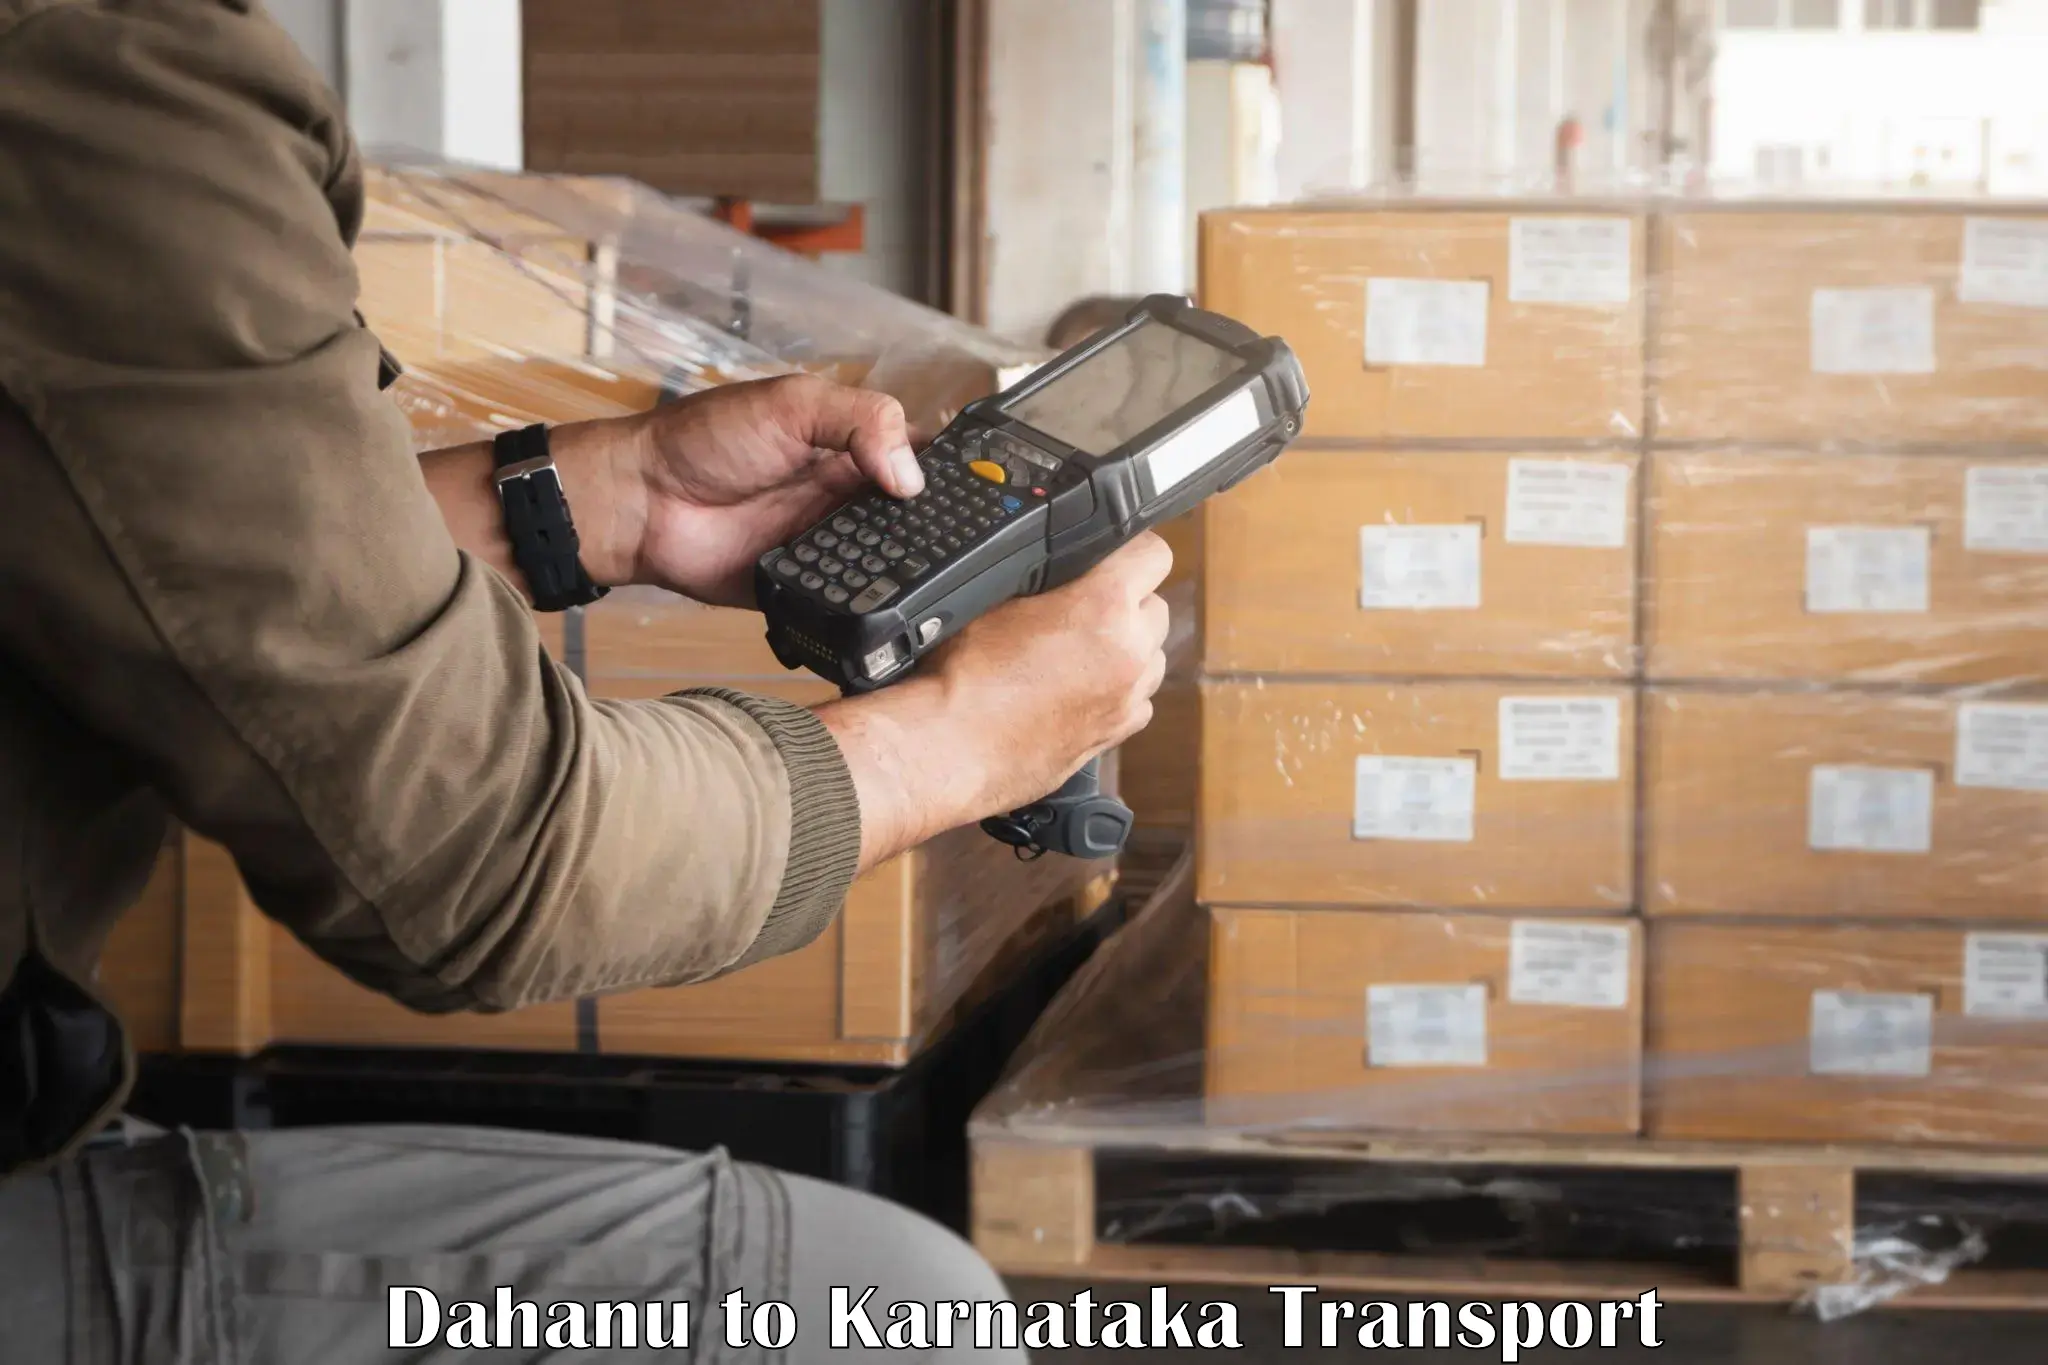 India truck logistics services Dahanu to Mandya